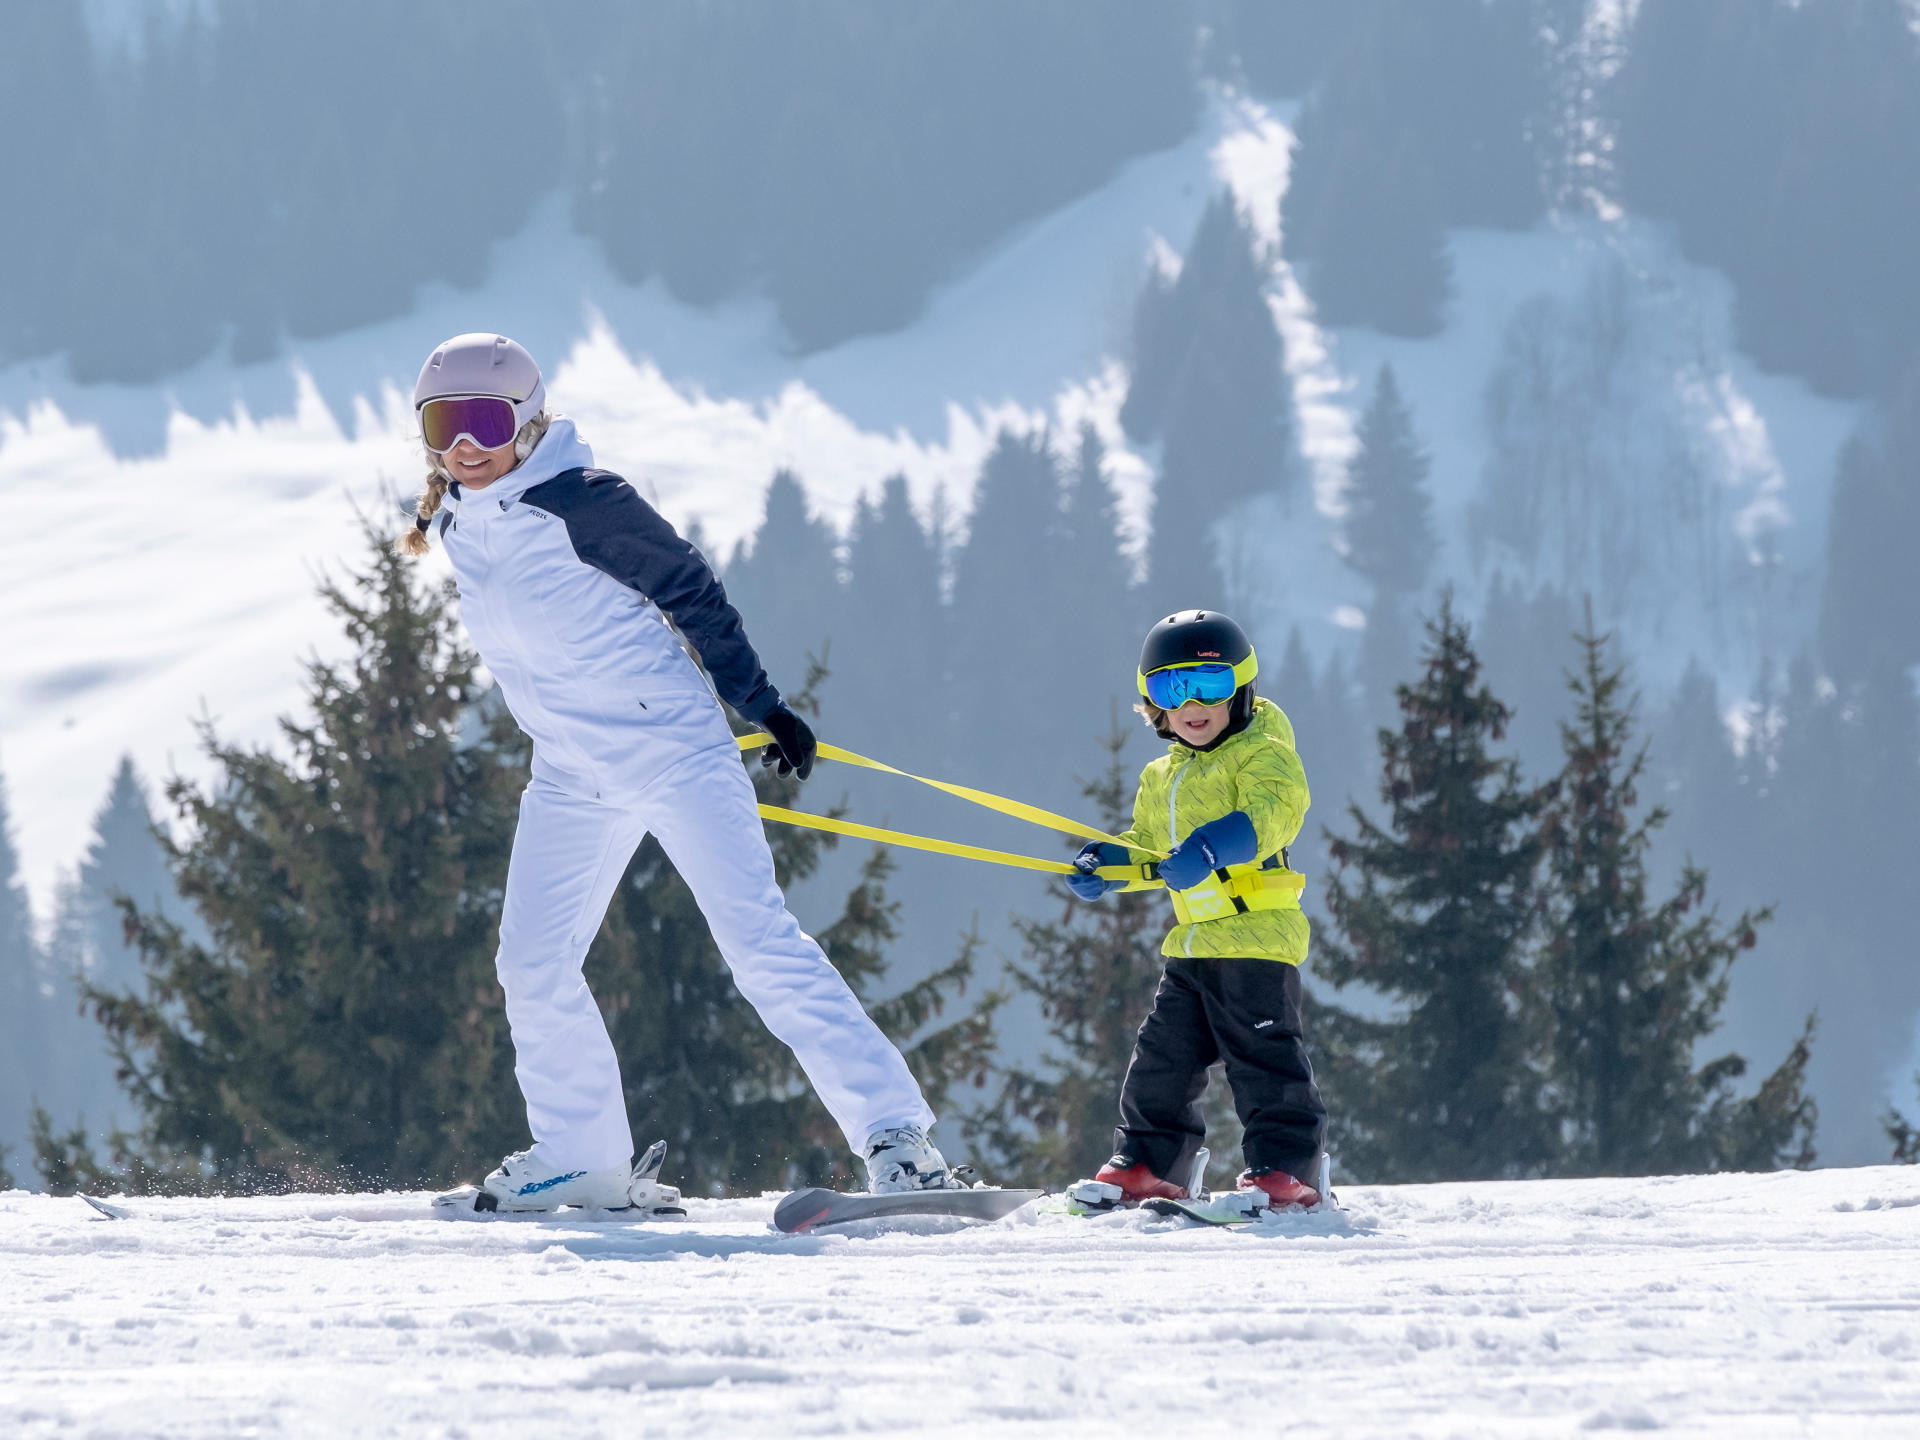 Harnais pour l'apprentissage du ski aux enfants débutants